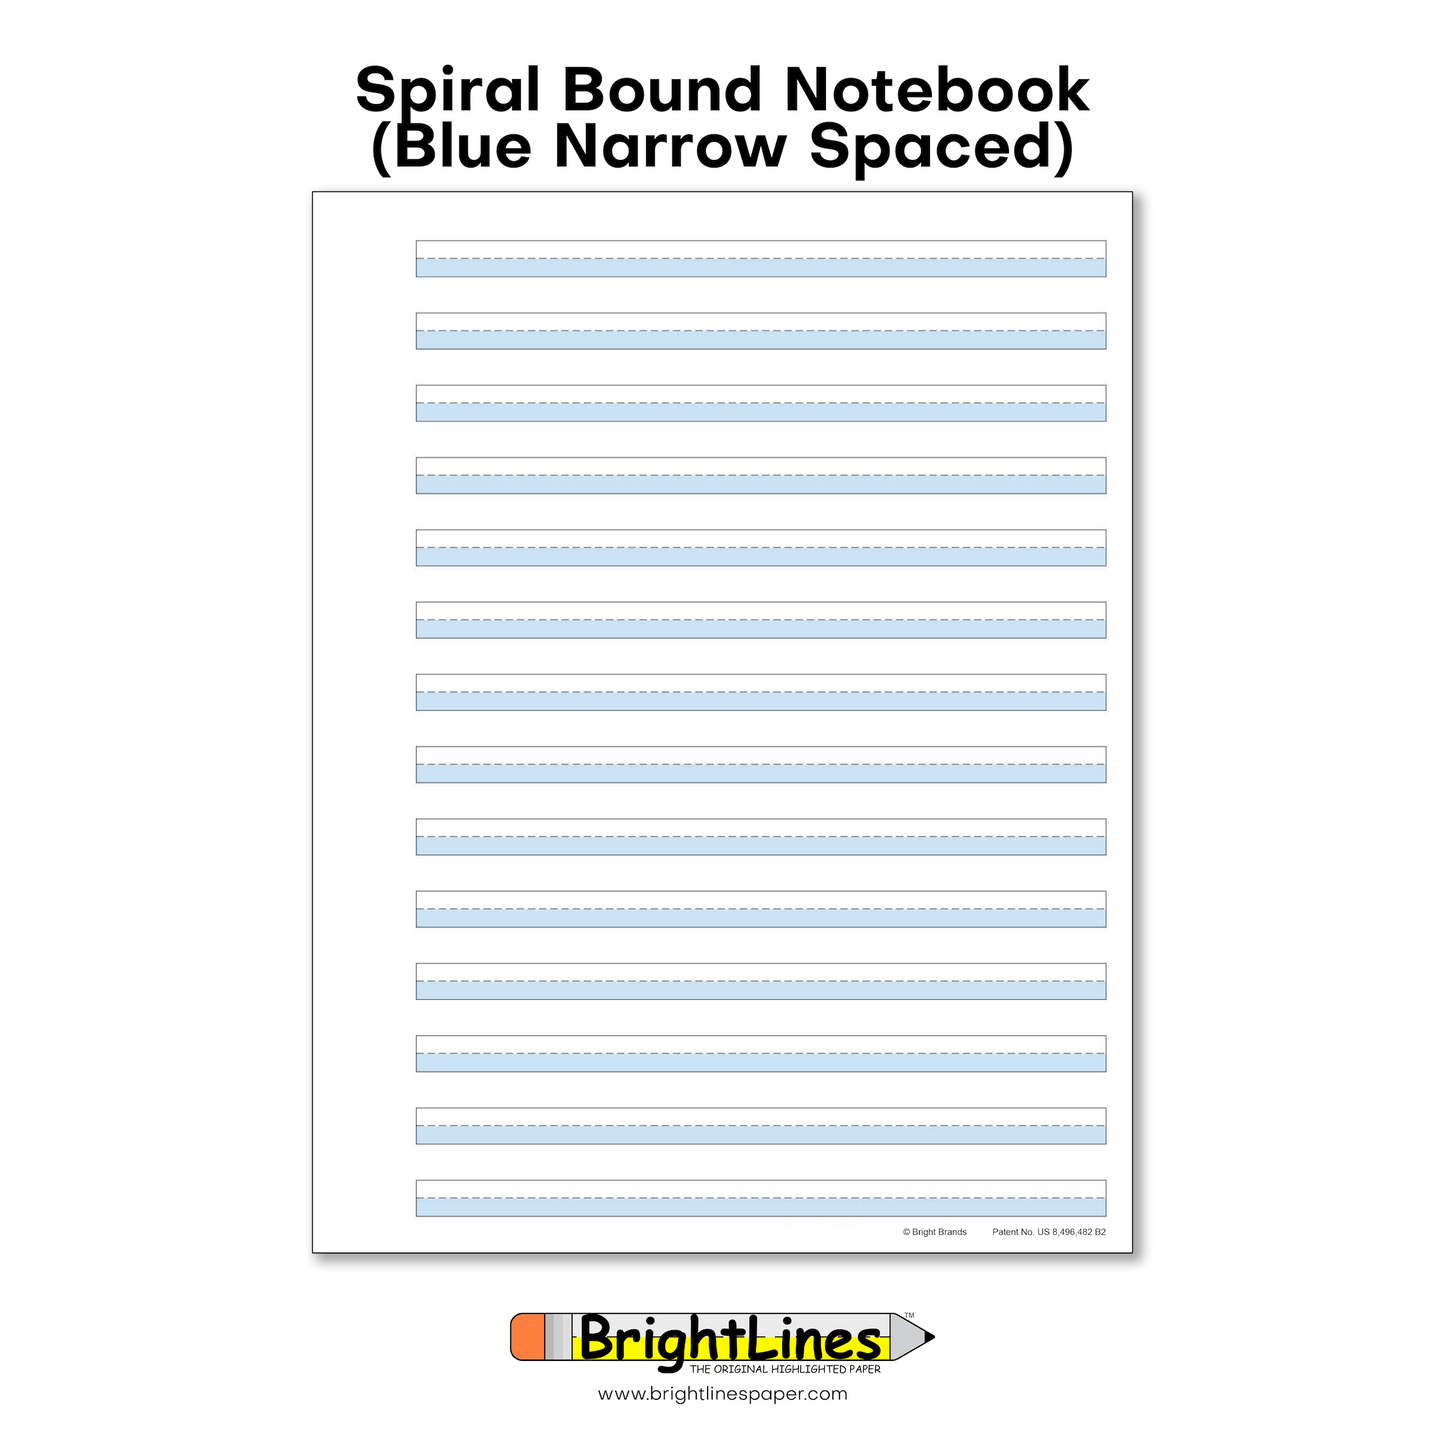 BrightLines - Spiral Notebooks